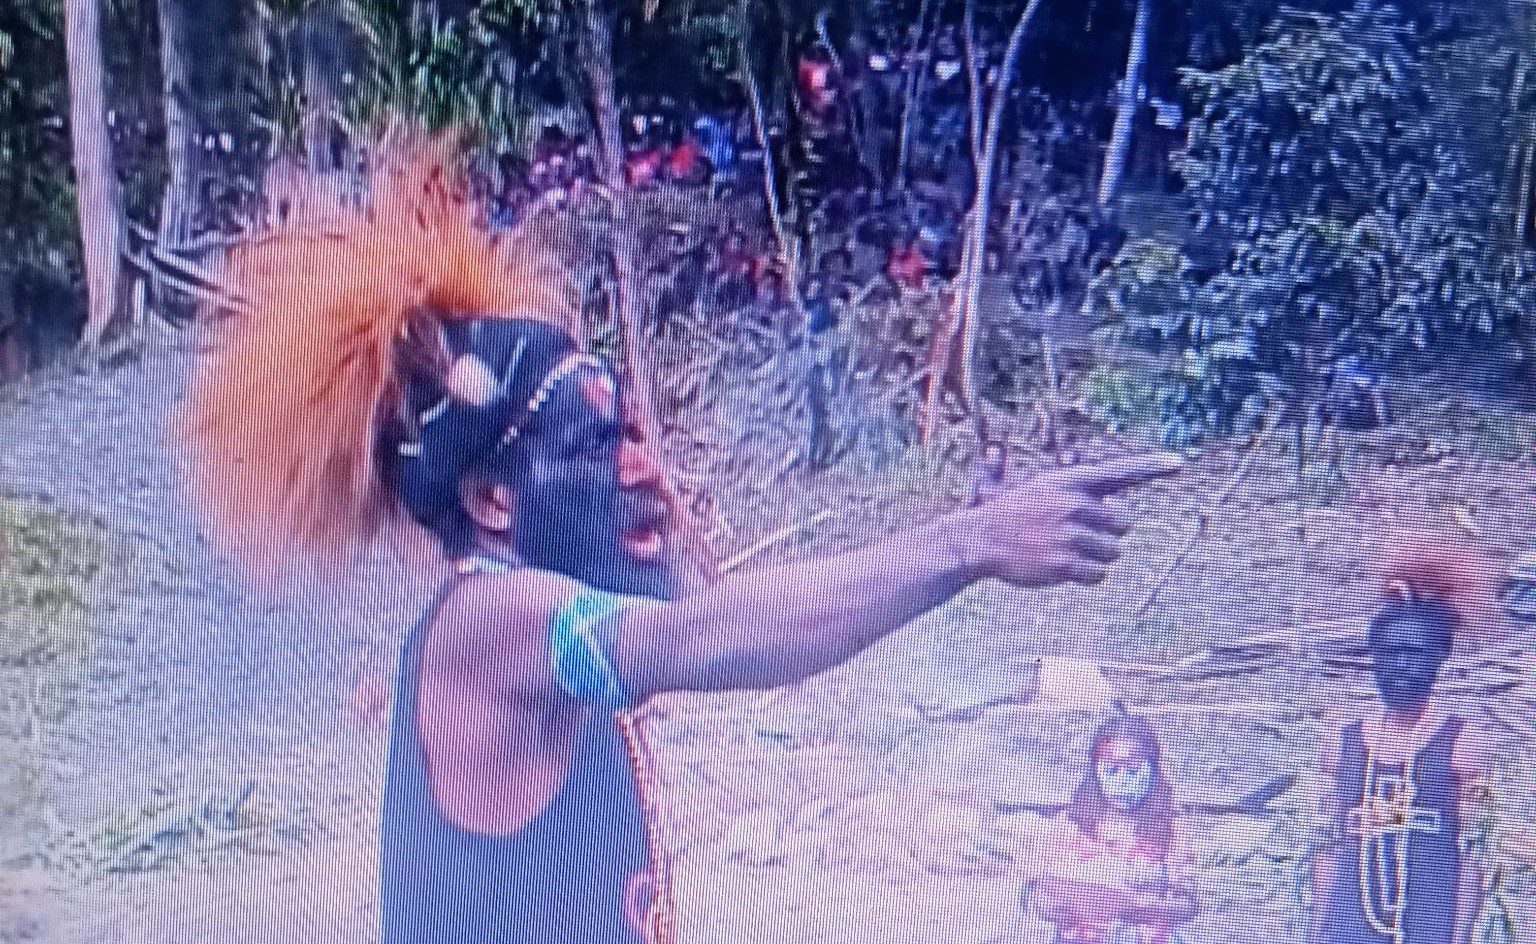 West-Papua Nationale Befreiungsarmee